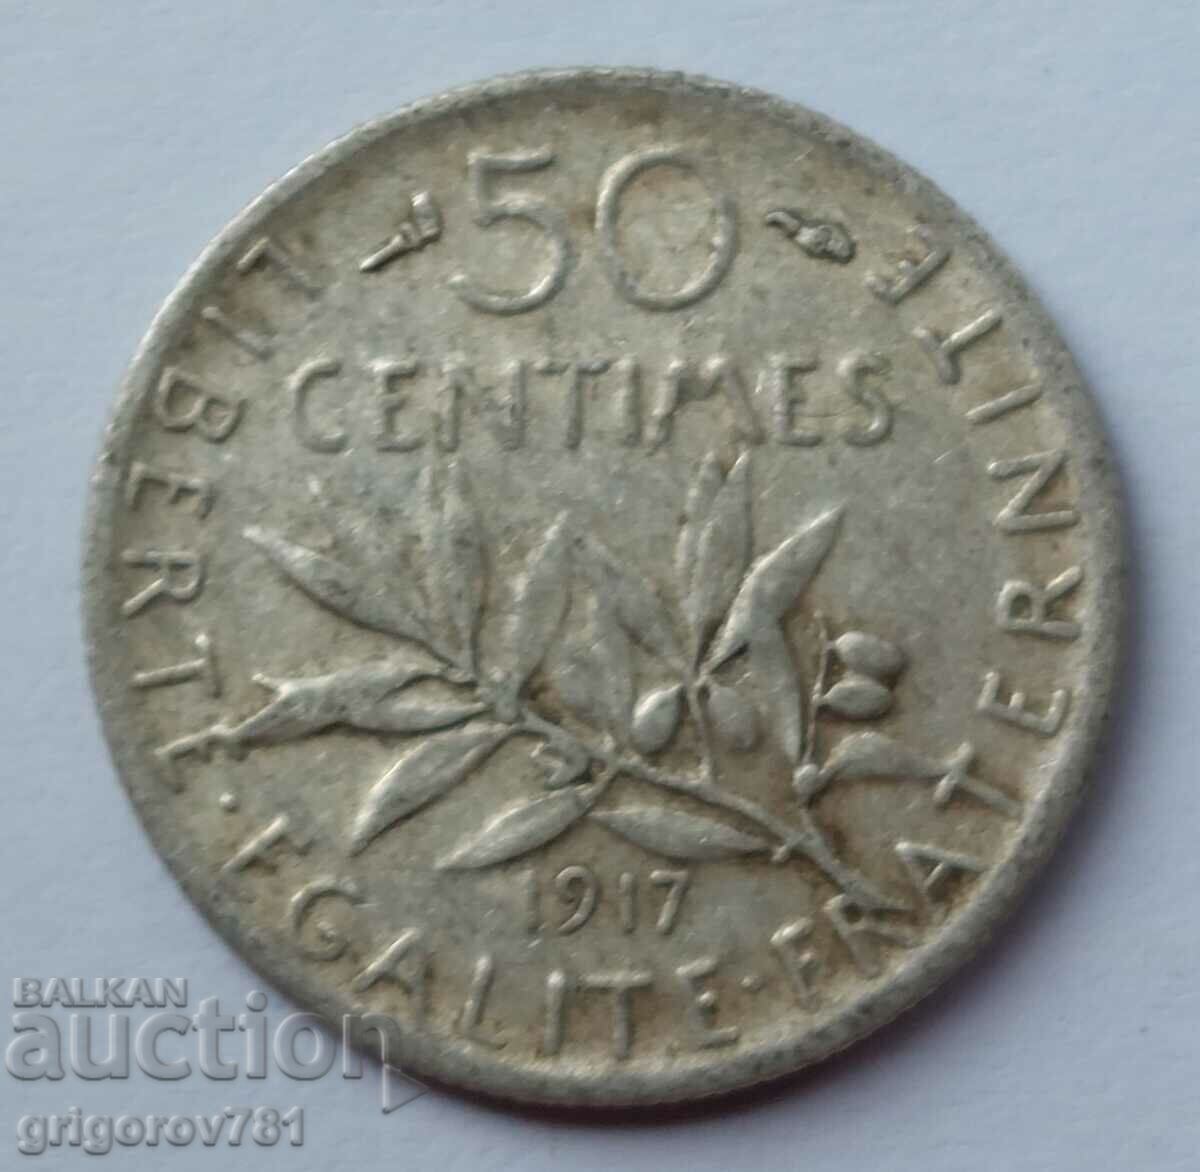 Ασημένιο 50 εκατοστά Γαλλία 1917 - ασημένιο νόμισμα №46